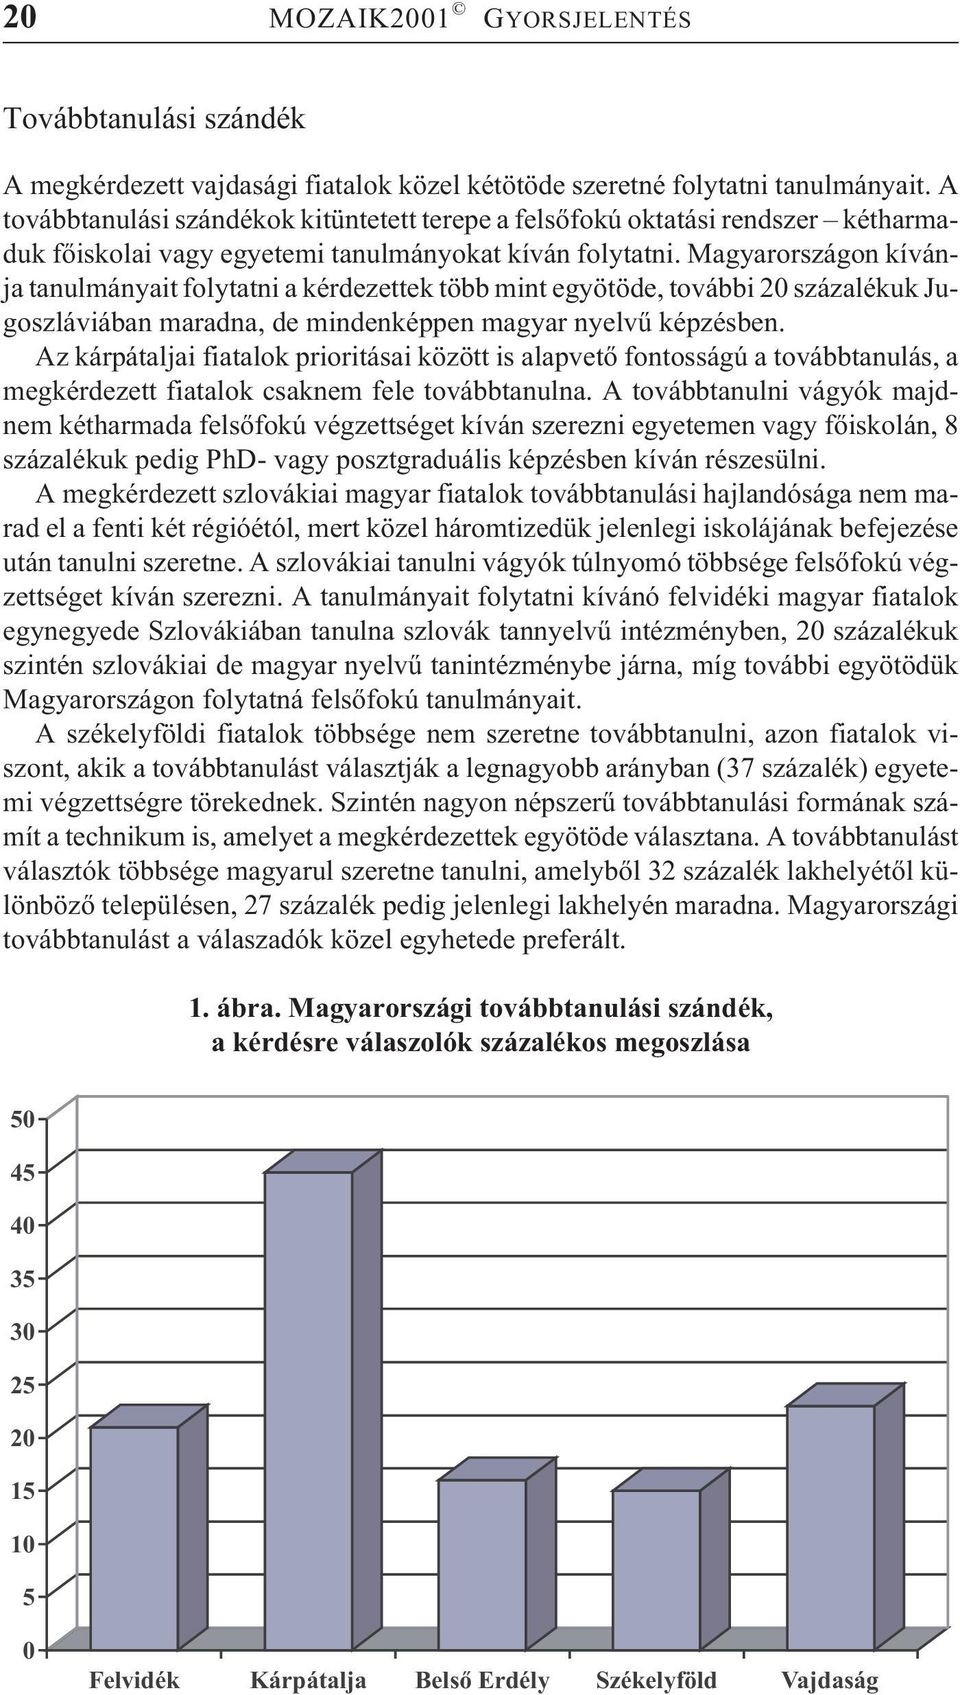 Magyarországon kívánja tanulmányait folytatni a kérdezettek több mint egyötöde, további 20 százalékuk Jugoszláviában maradna, de mindenképpen magyar nyelvû képzésben.